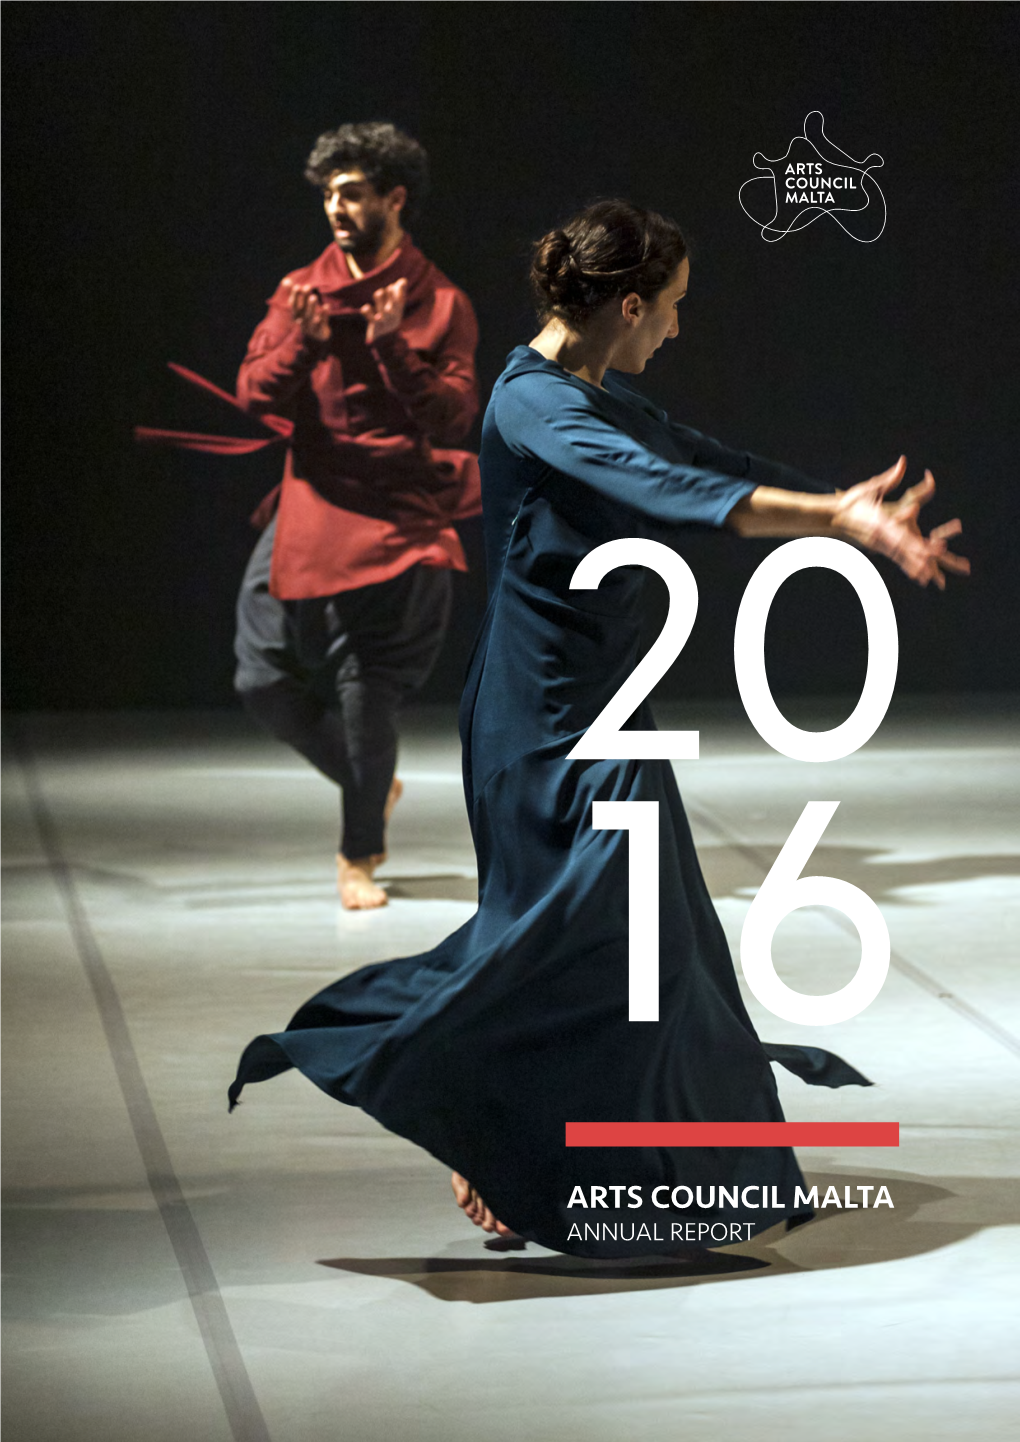 Arts Council Malta Annual Report 2016